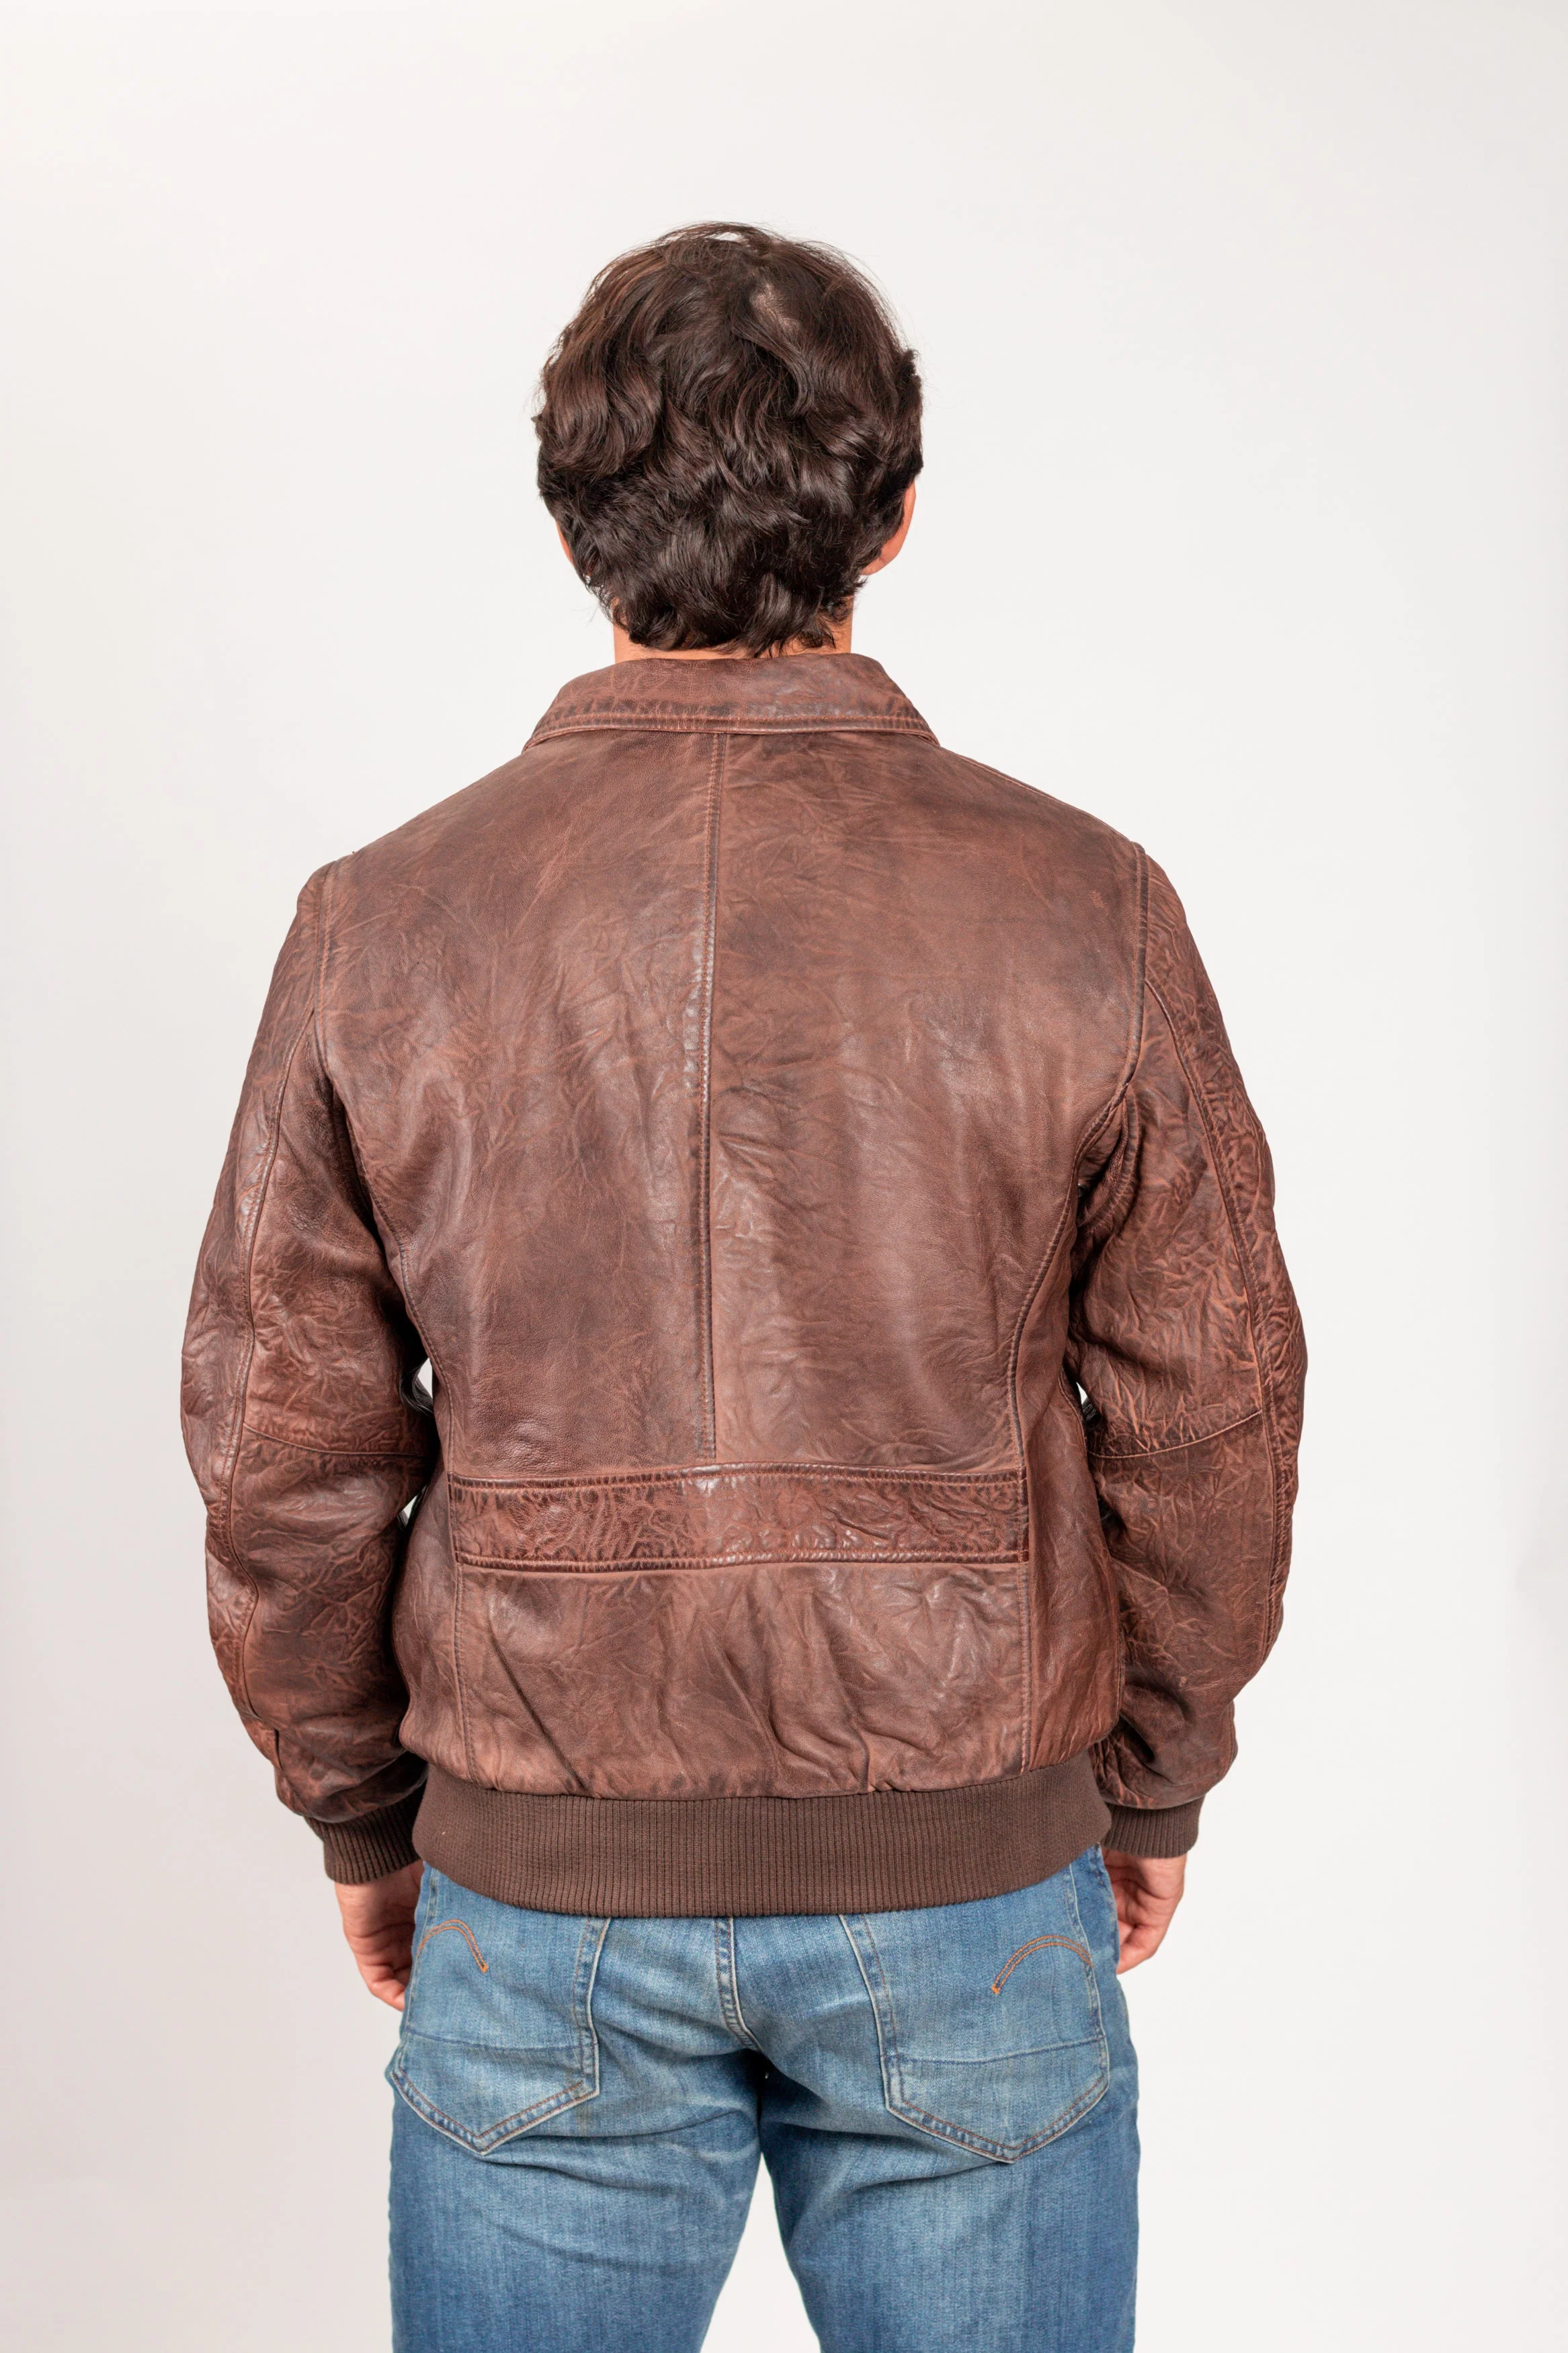 The Duke Men's Leather Bomber Jacket